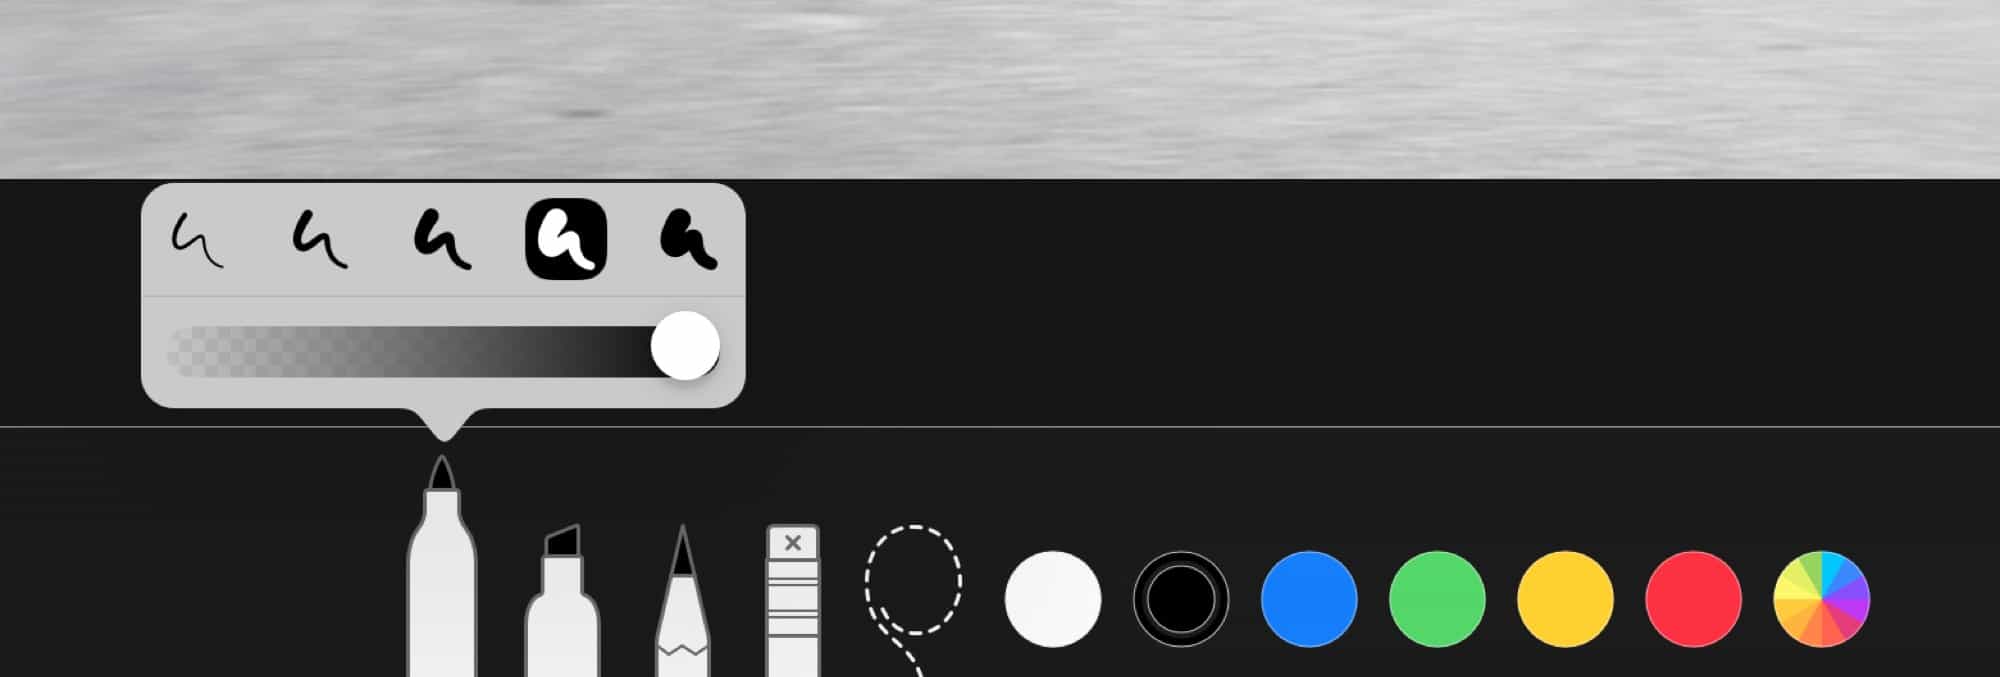 iOS 12 işaretleme özelliği